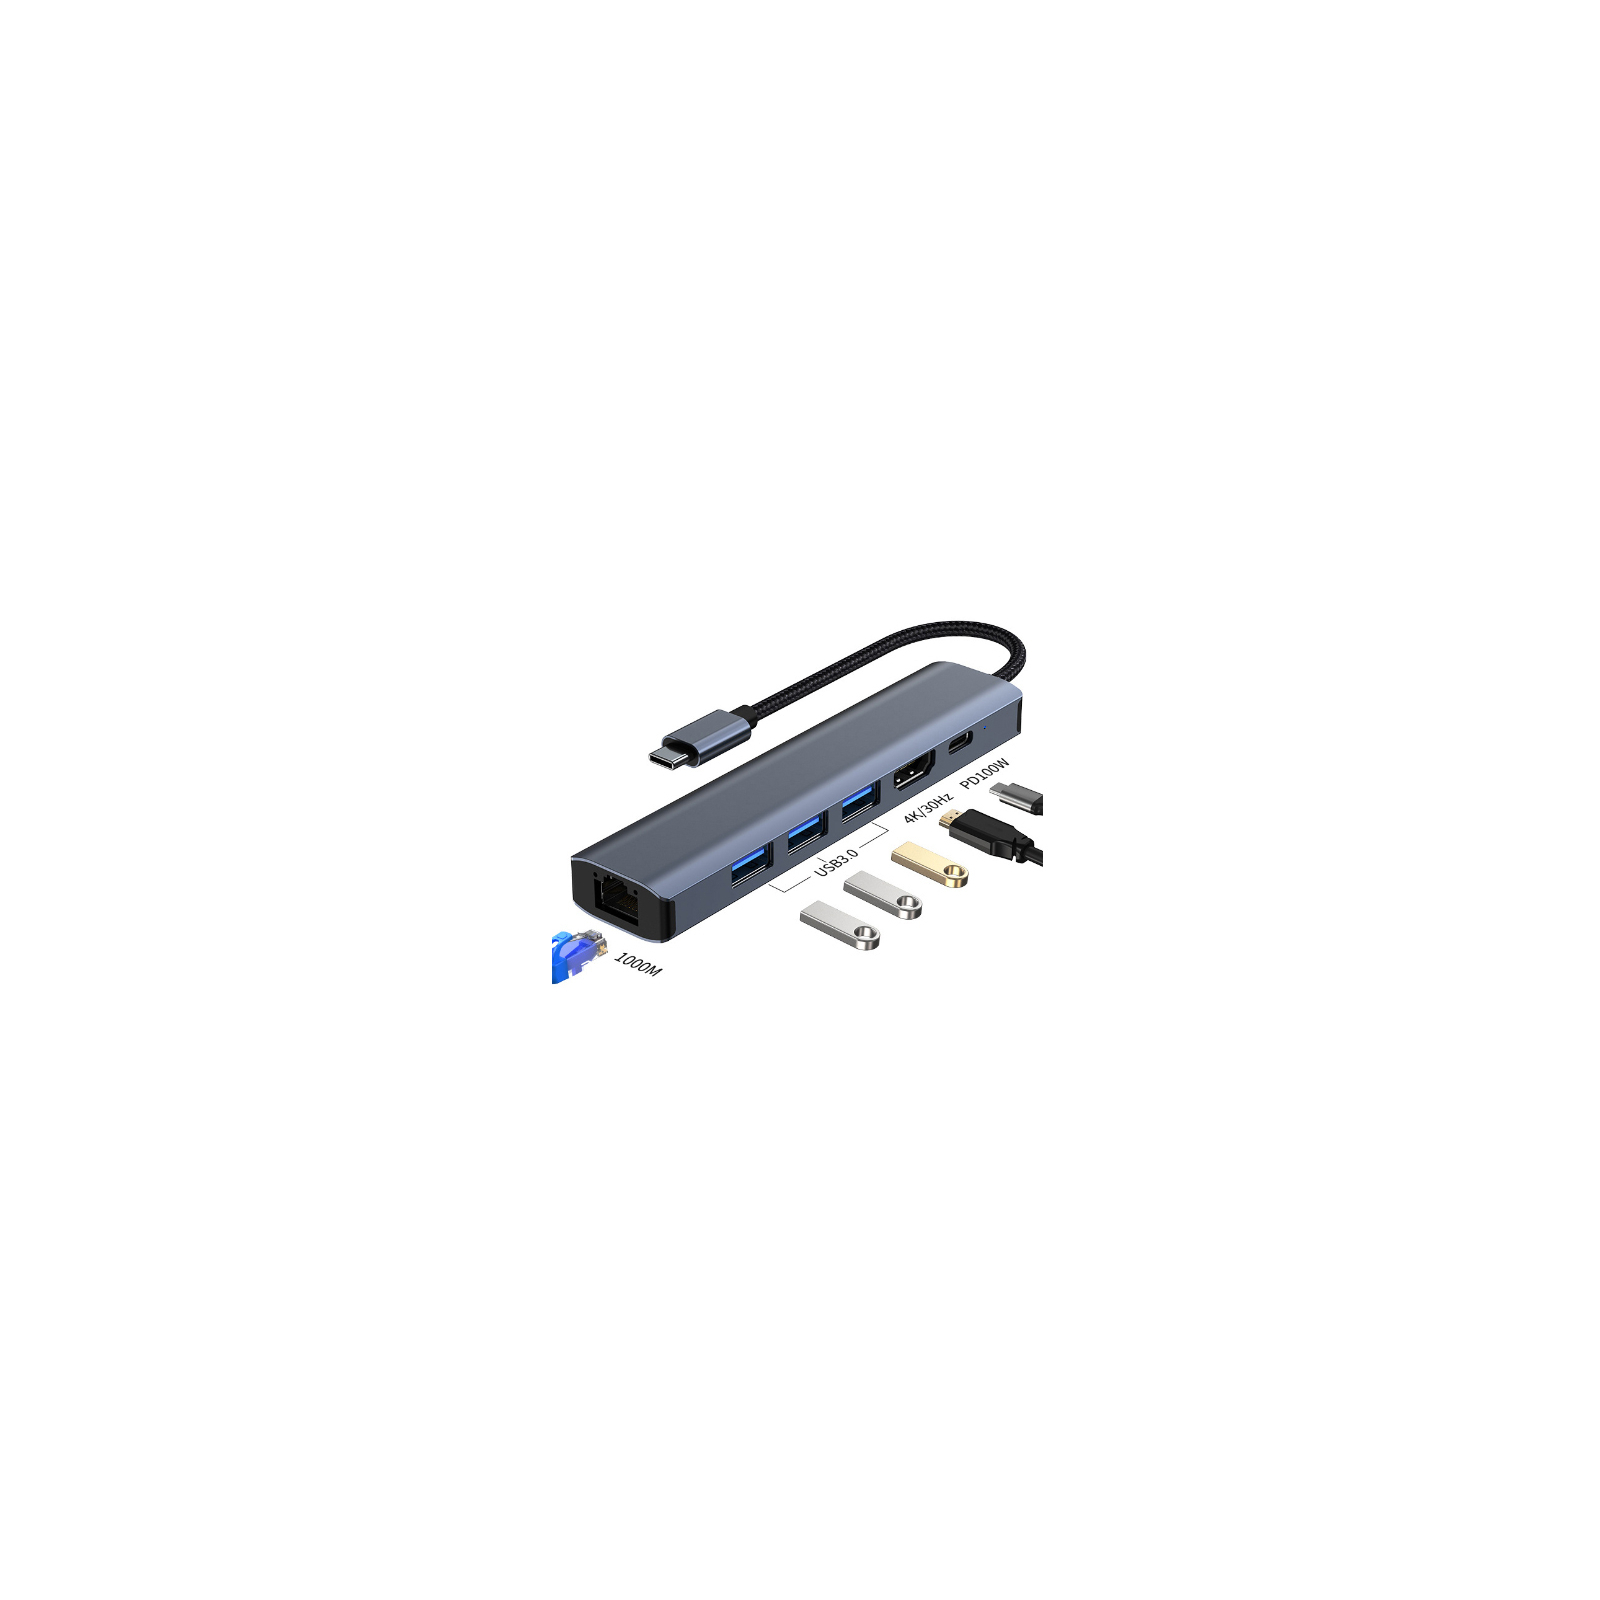 Концентратор Dynamode 7-in-1 USB-C to HDTV 4K/30Hz, 2хUSB3.0, RJ45, USB-C PD 100W, SD/MicroSD (BYL-2303) зображення 3